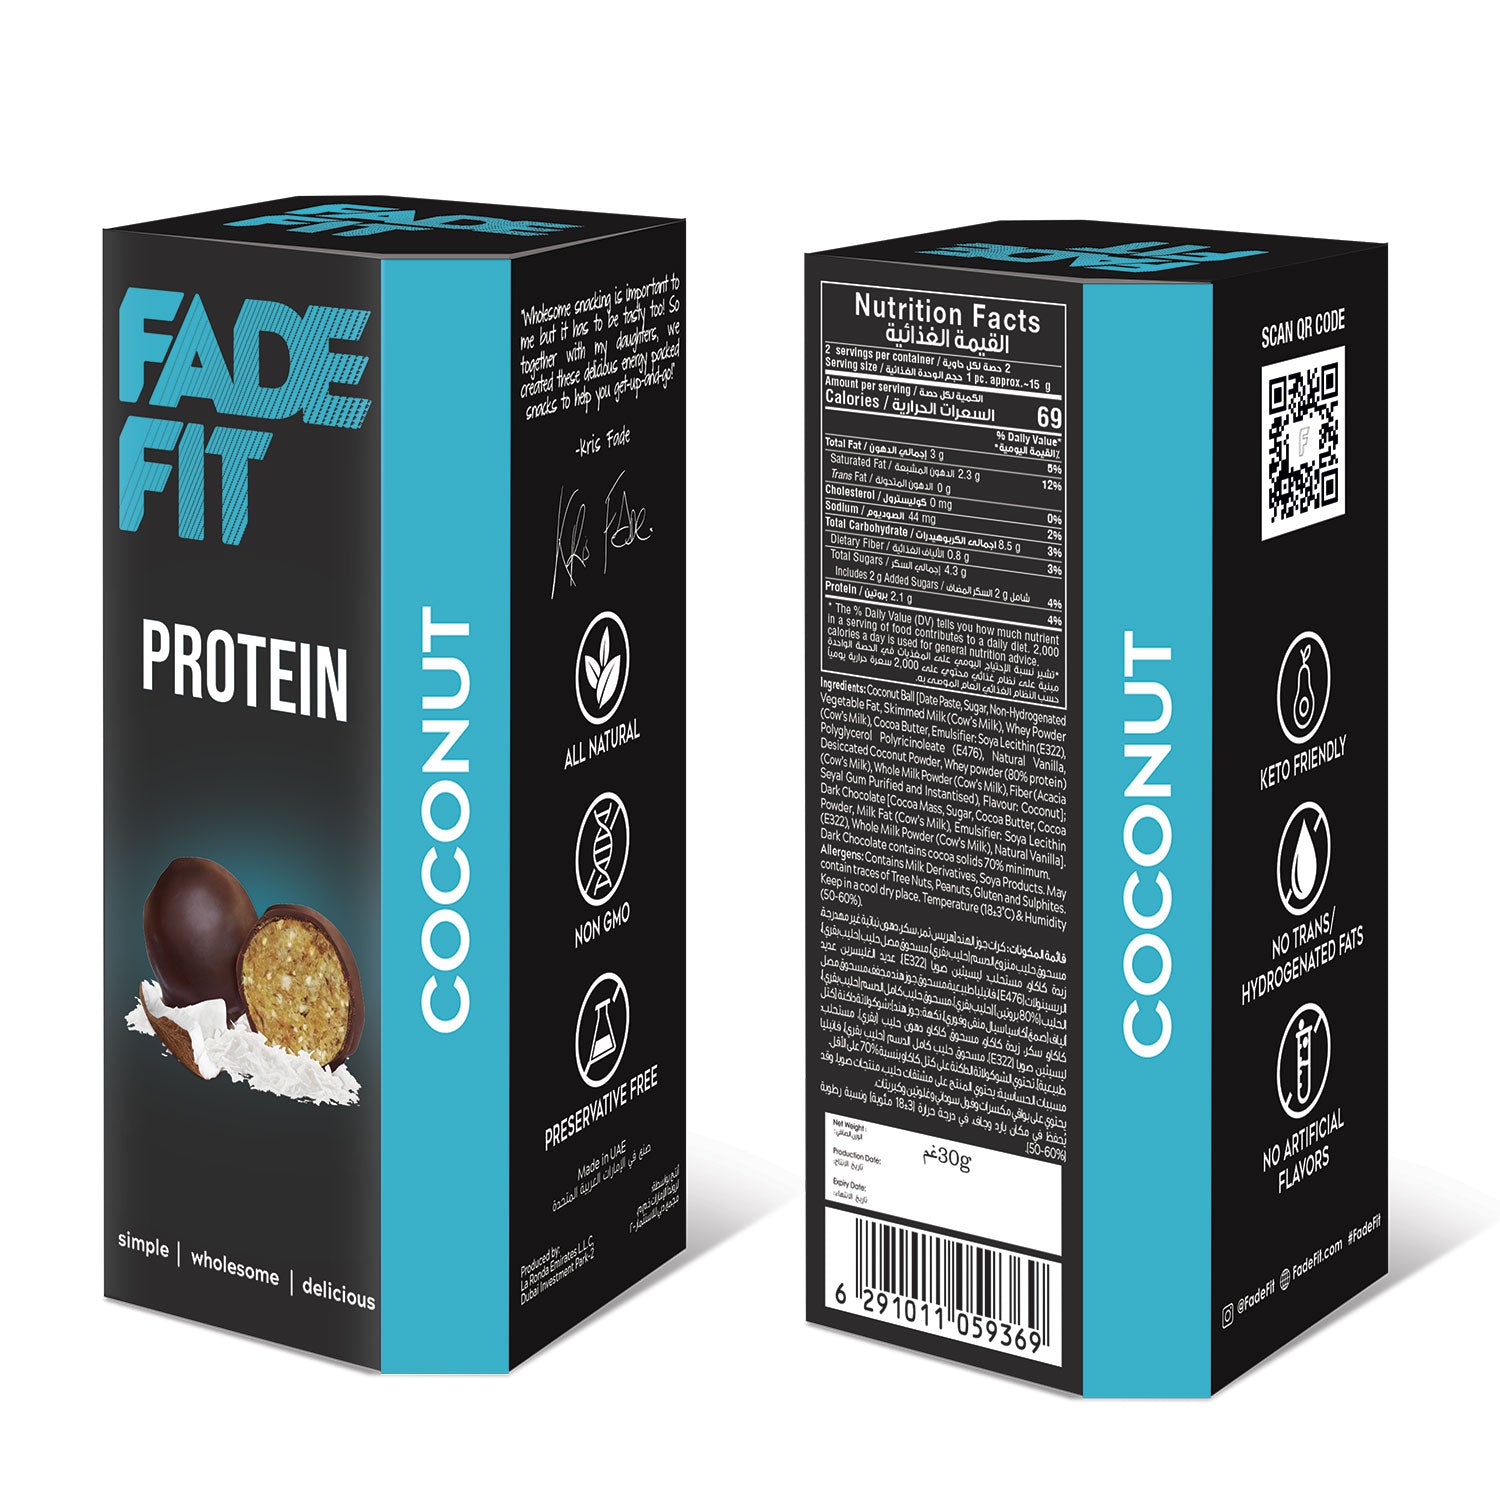 FADE FIT Coconut Protein Balls, 30g - Keto friendly, Non GMO, Natural